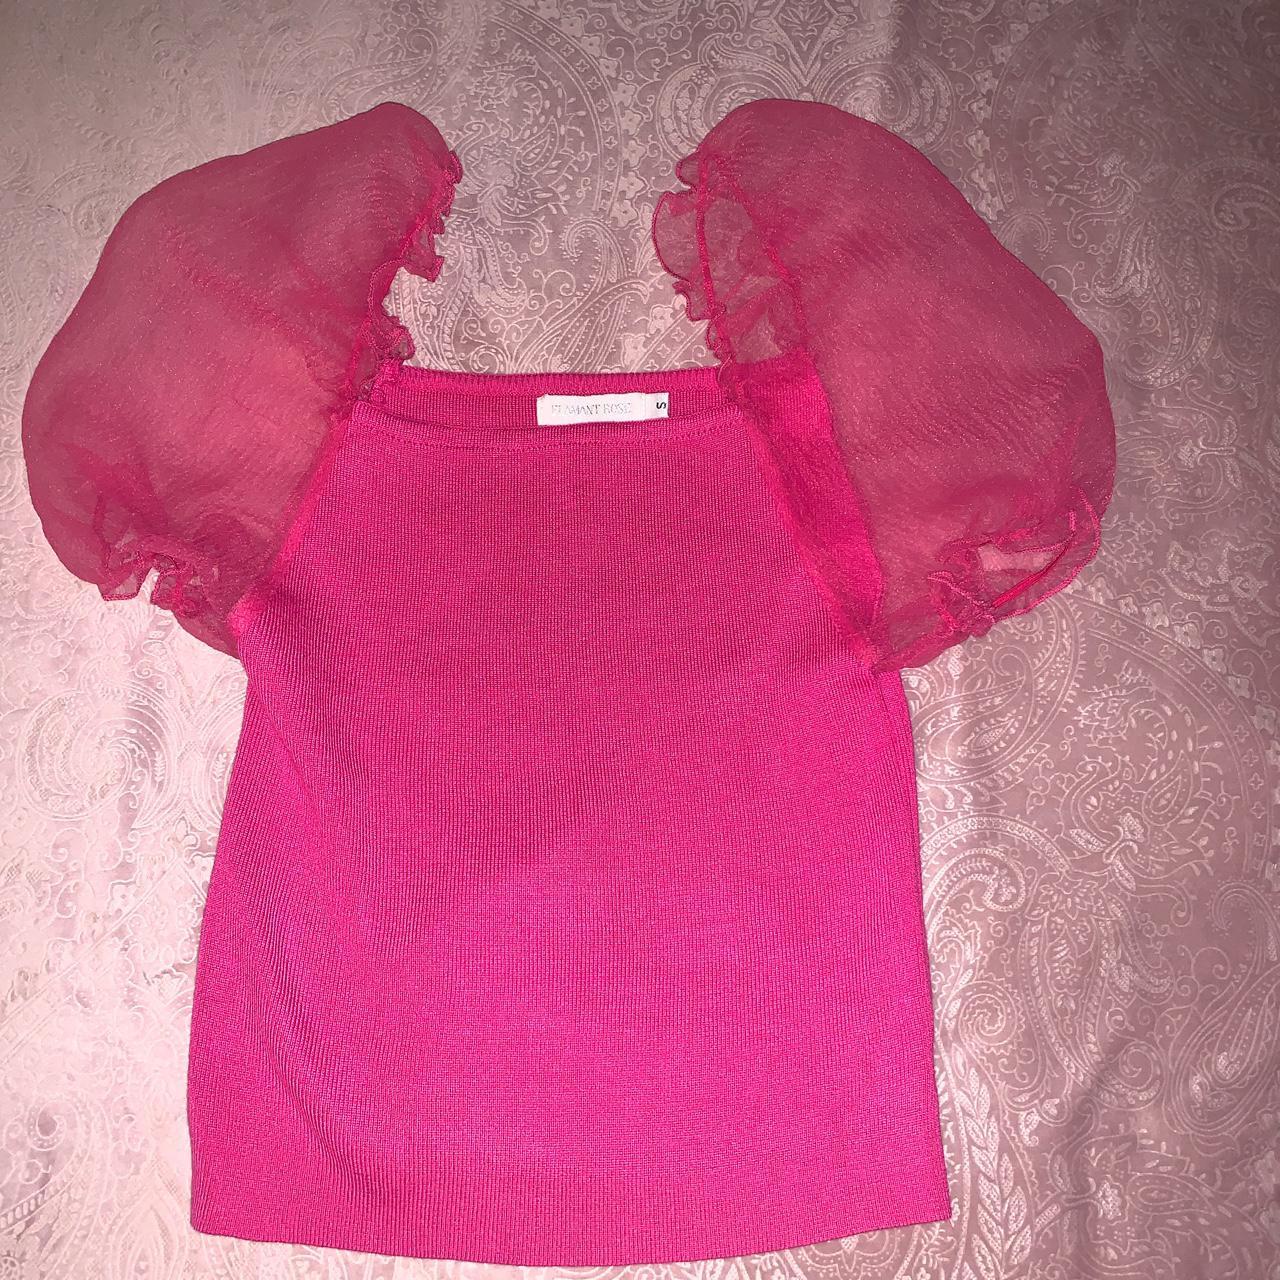 SHEIN puffy pink top never worn #SHEIN #puffypink - Depop